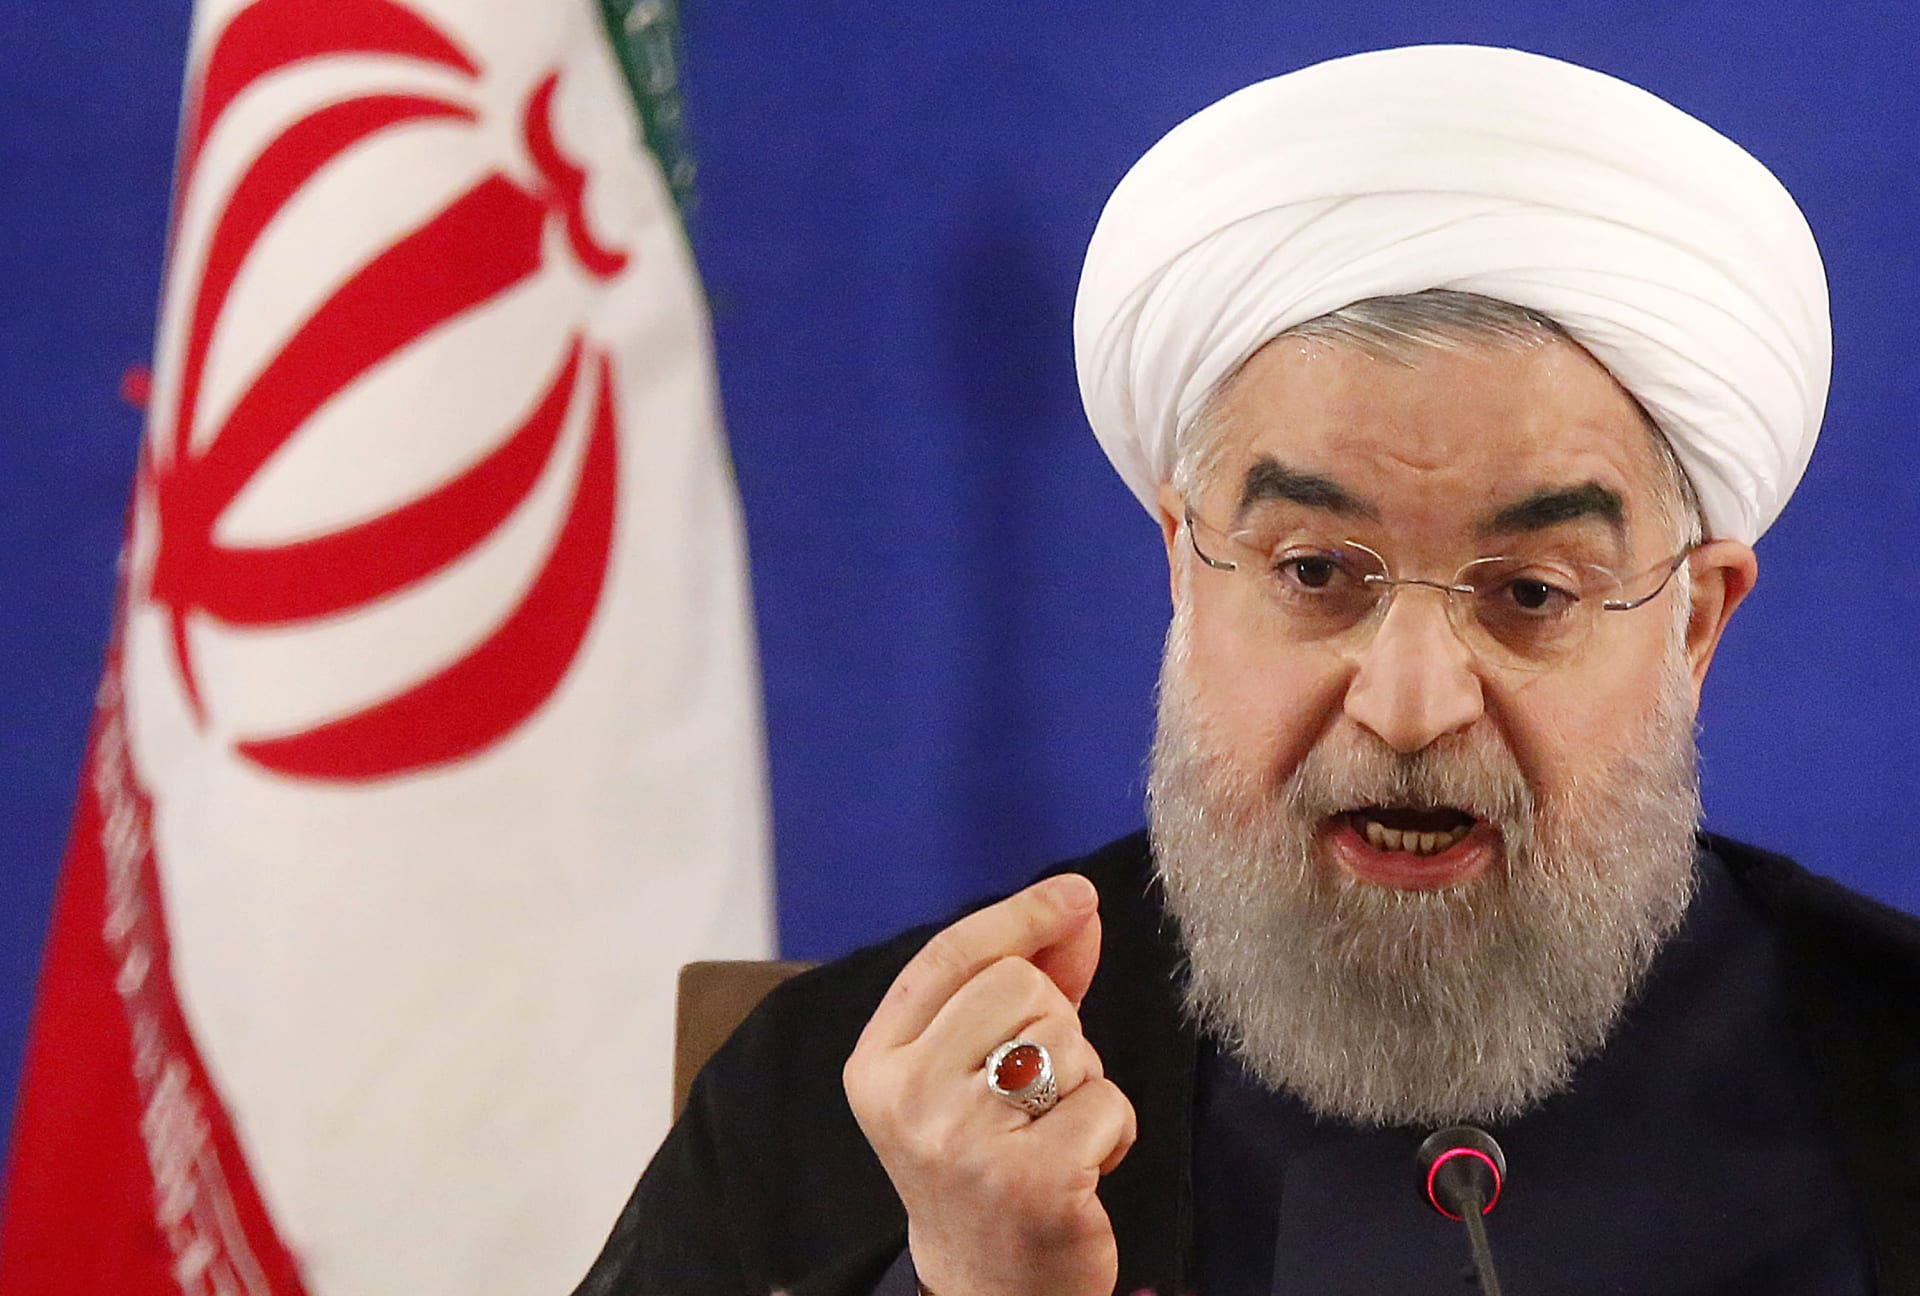 روحاني يتهم السعودية بـ"دعم الإرهاب".. ويحدد "رضا" حجاج إيران كشرط لحل الخلافات